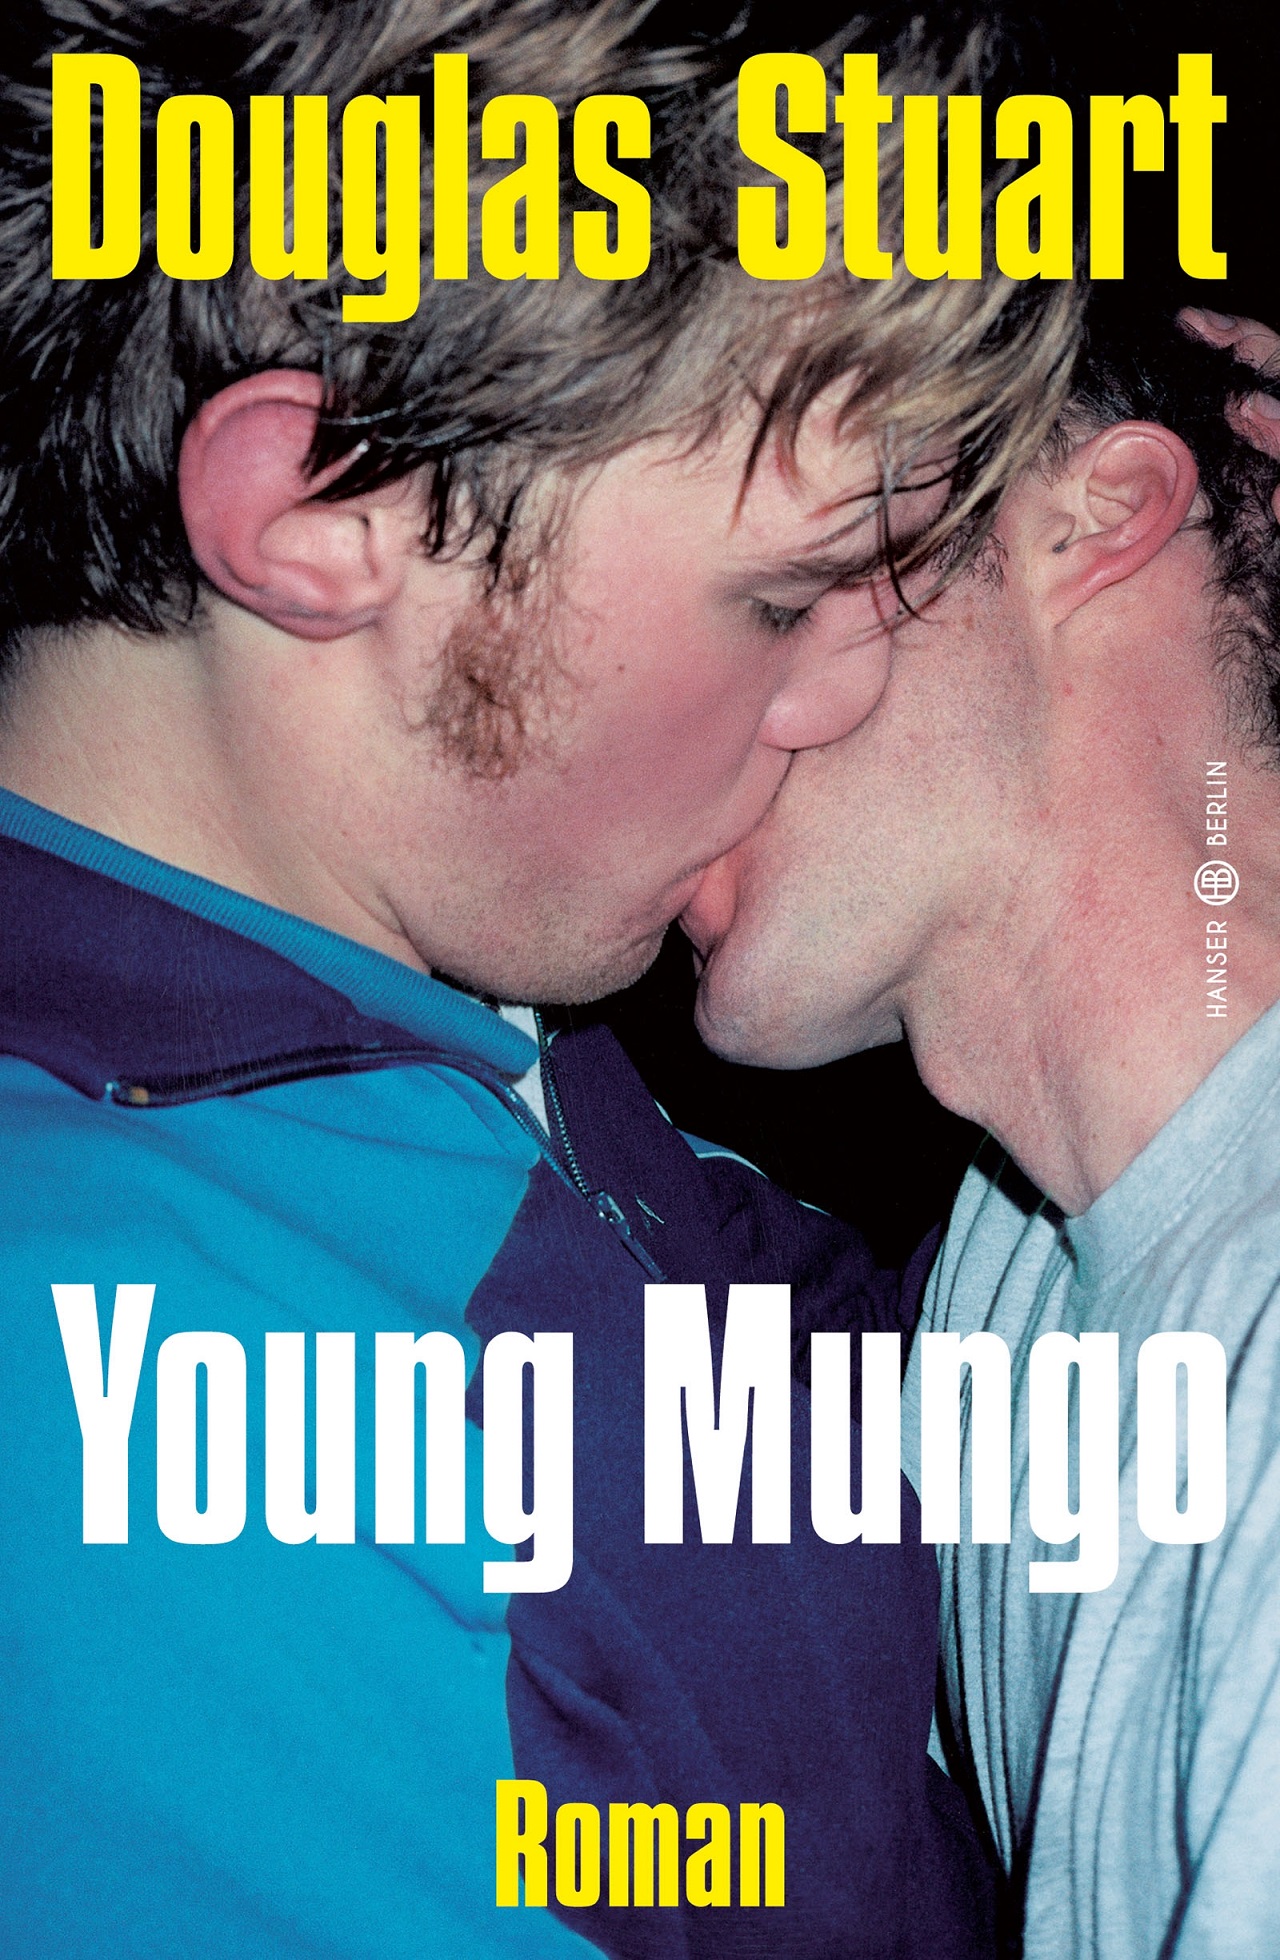 Douglas Stuart Young Mungo - Buchcover: Zwei sich küssende Männder, Foto von Wolfgang Tillmans